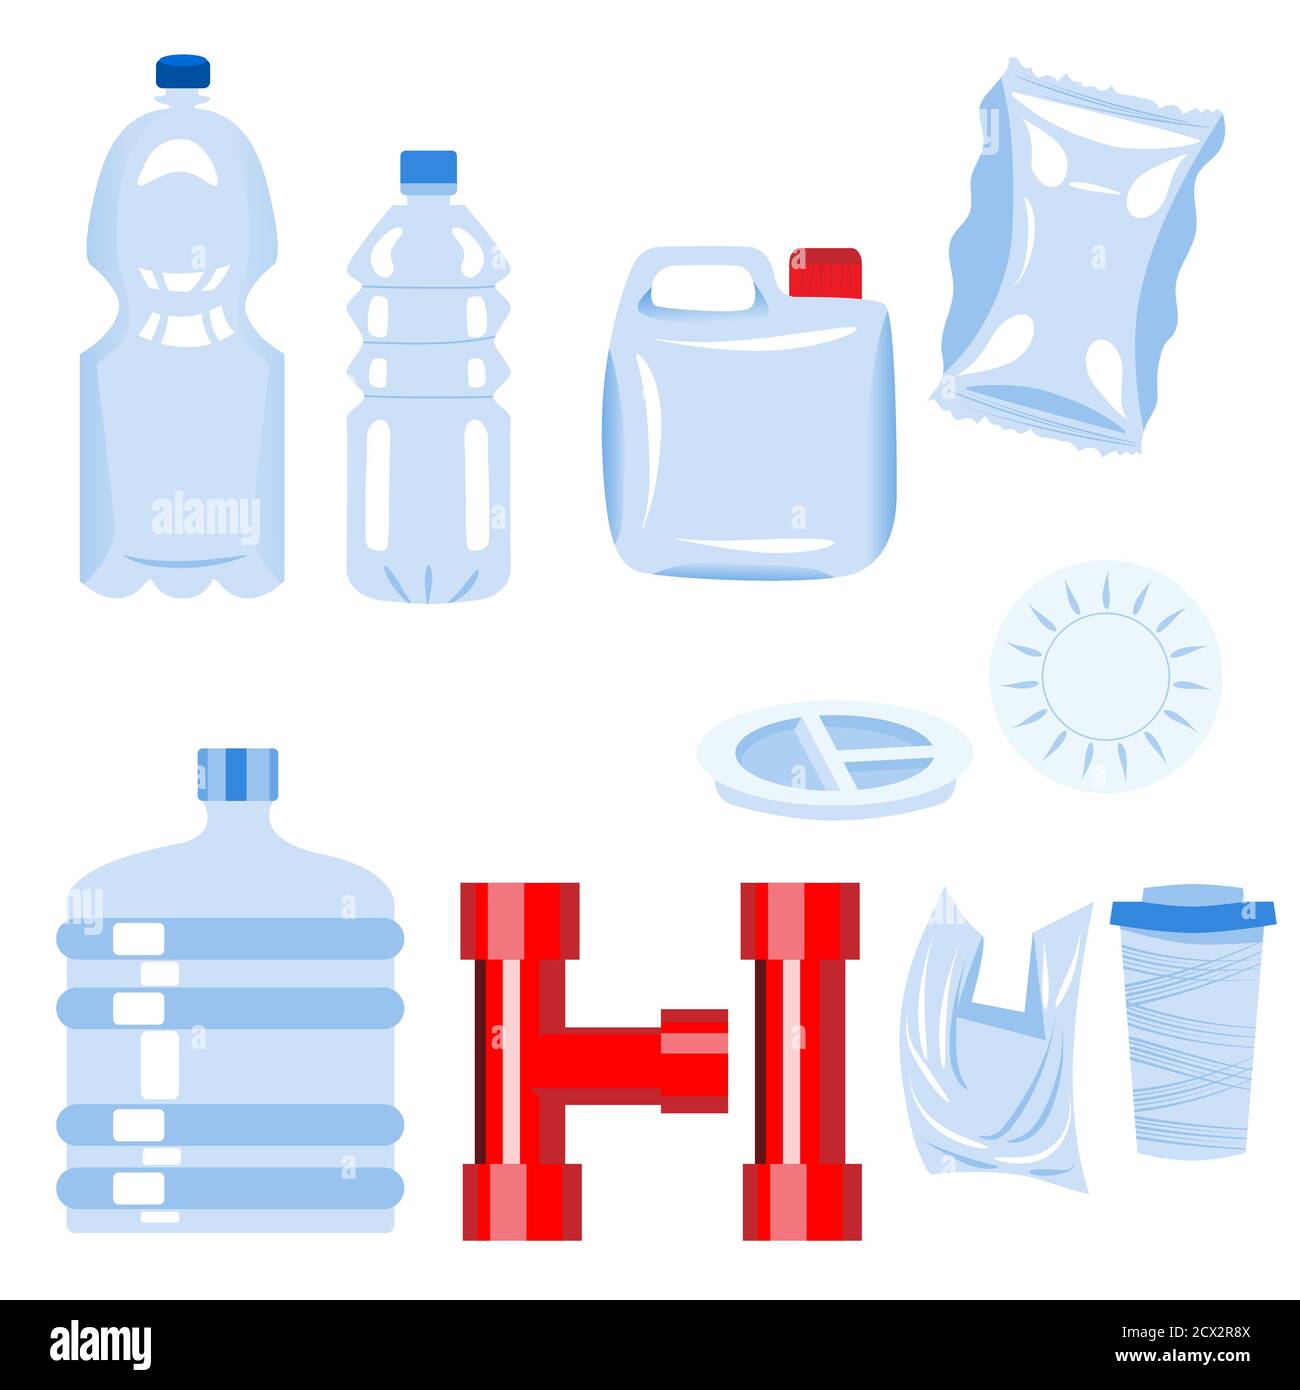 Satz von Kunststoffartikeln. Flasche, Teller, Glas, Rohr, 5-Gallone Eimer, Beutel, Verpackung, Tunnel, Kanister. Kunststoffmaterialien Stock Vektor